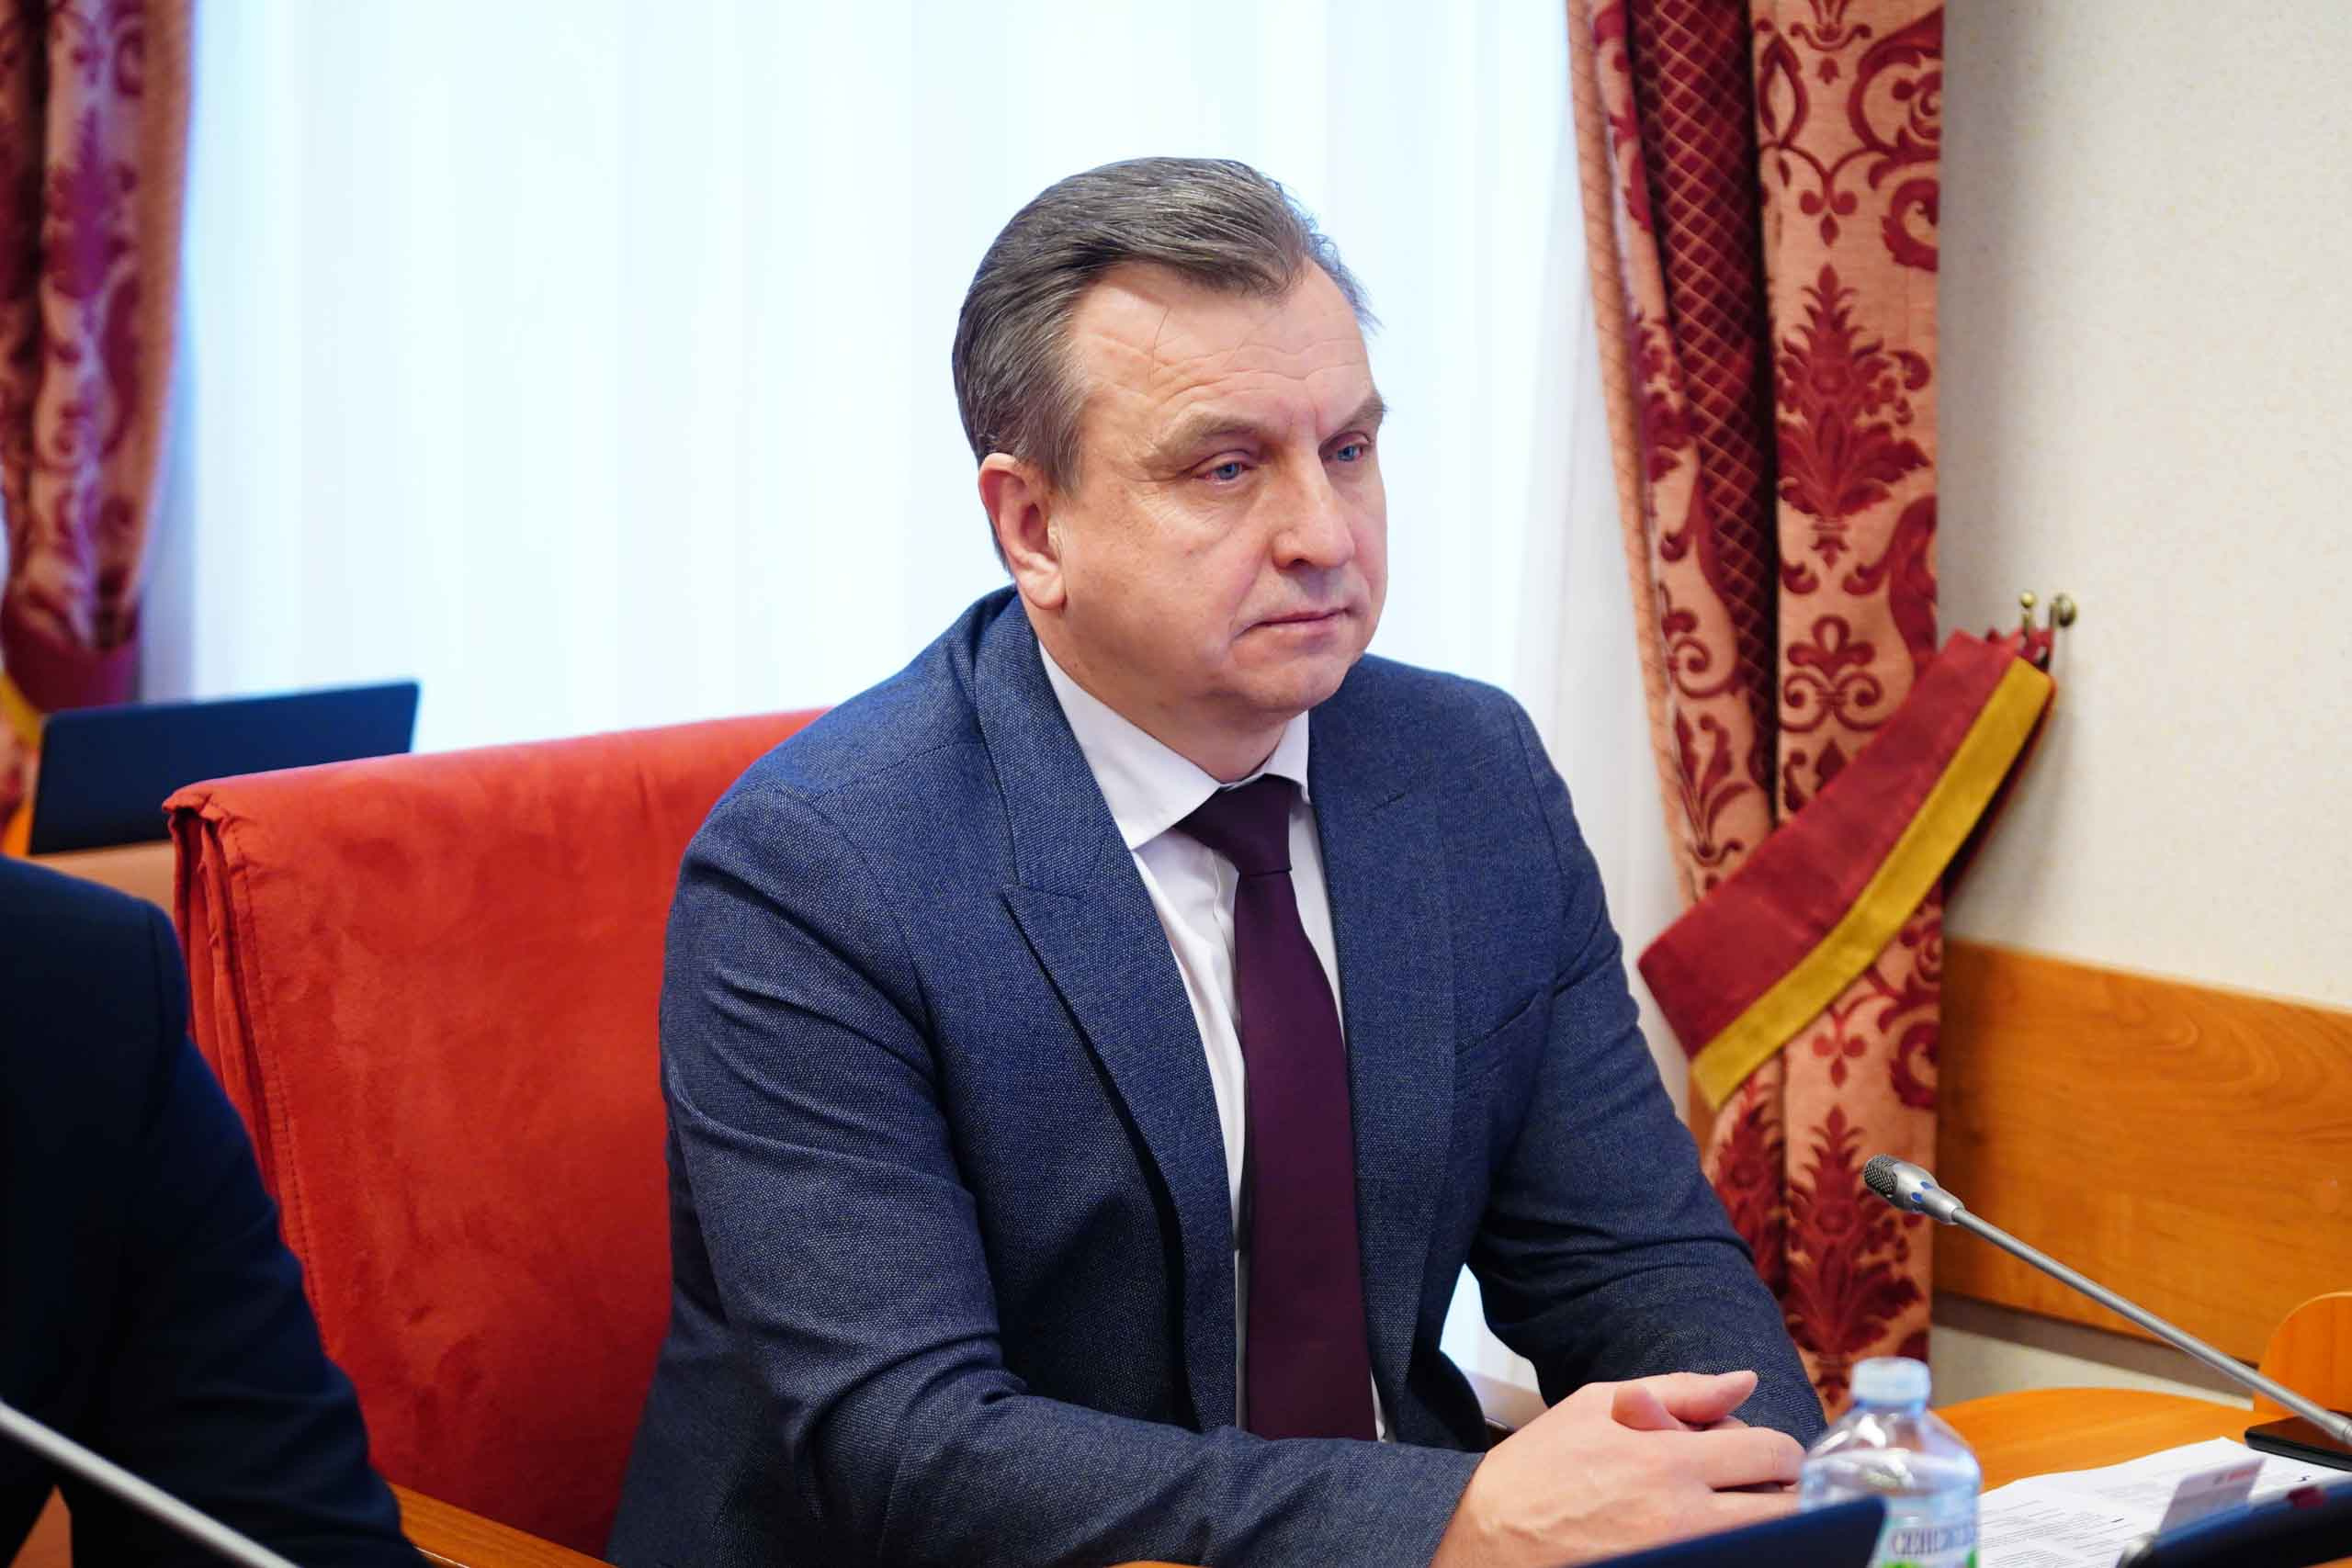 Валерий Байло выступил за возвращение прямых выборов мэра в Ярославле